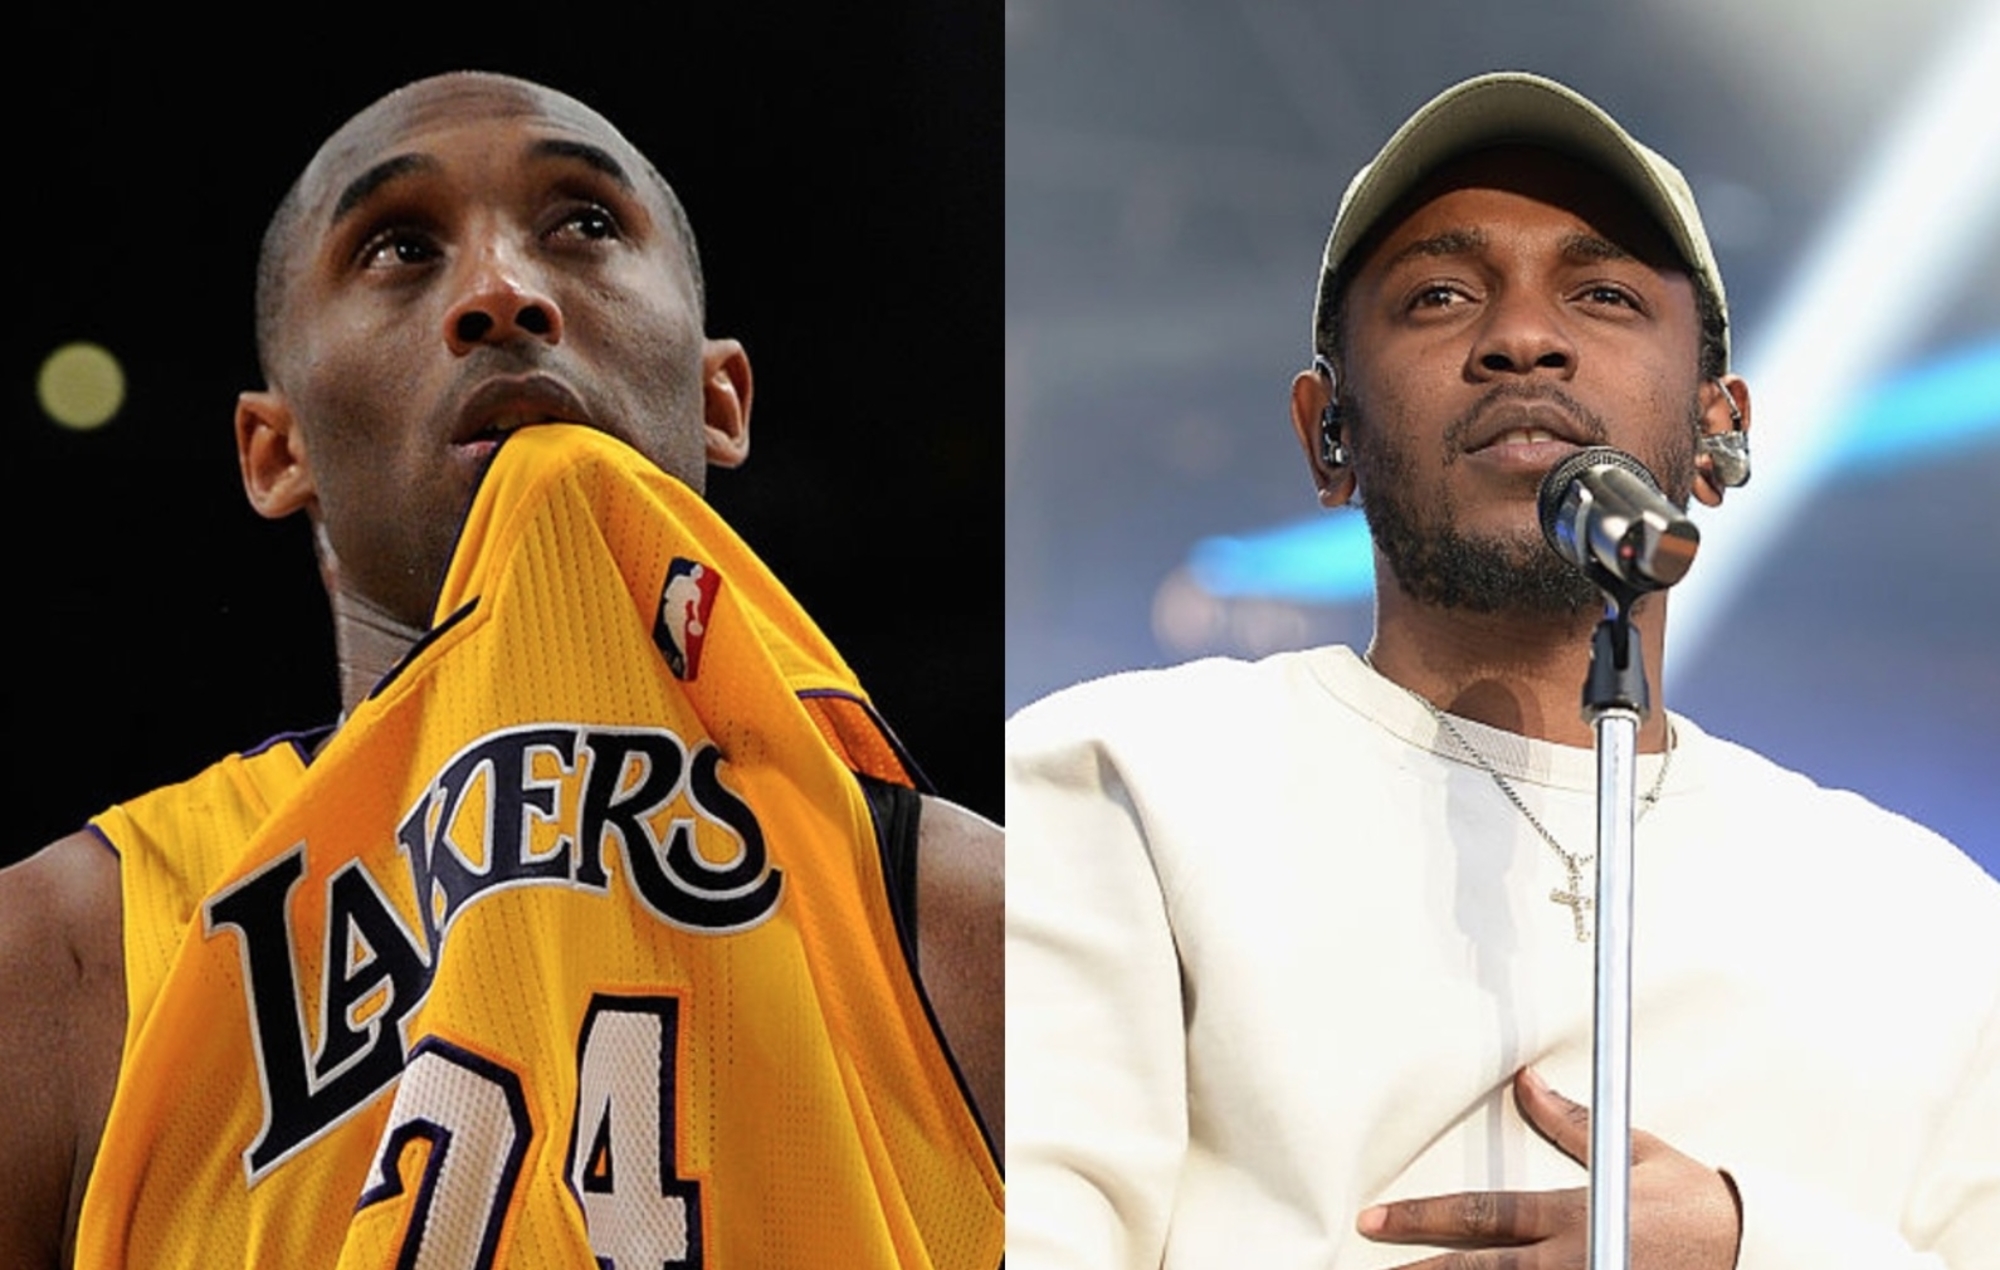 Kendrick Lamar narra el inspirador video tributo al cumpleaños de Kobe Bryant